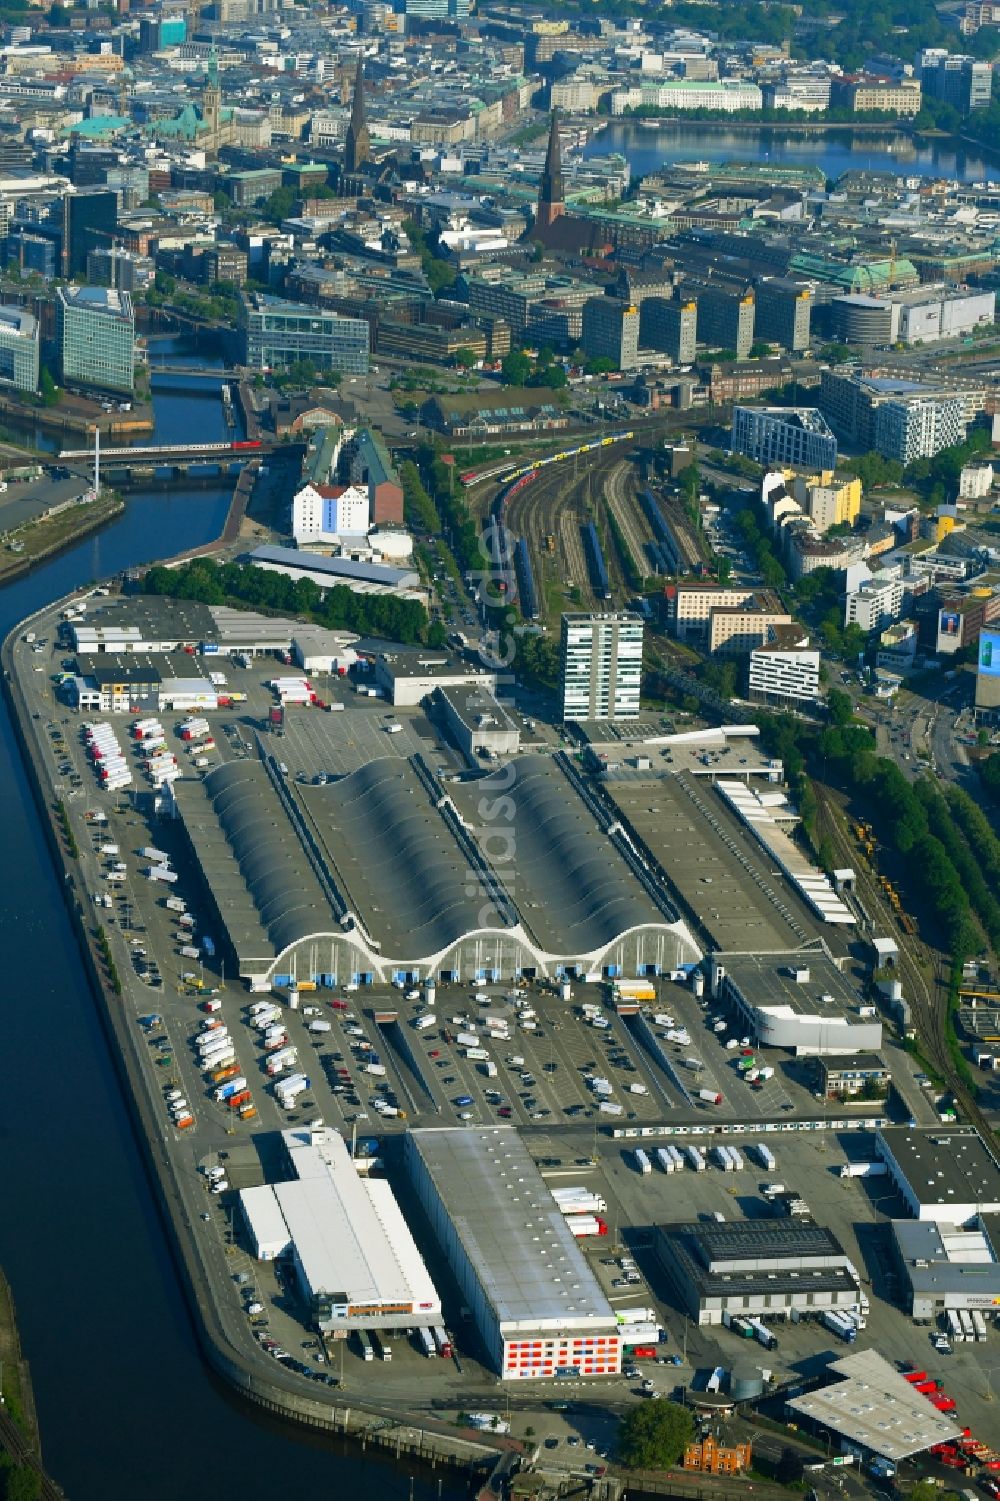 Luftbild Hamburg - Großhandelszentrum für Blumen , Obst und Gemüse in Hamburg, Deutschland